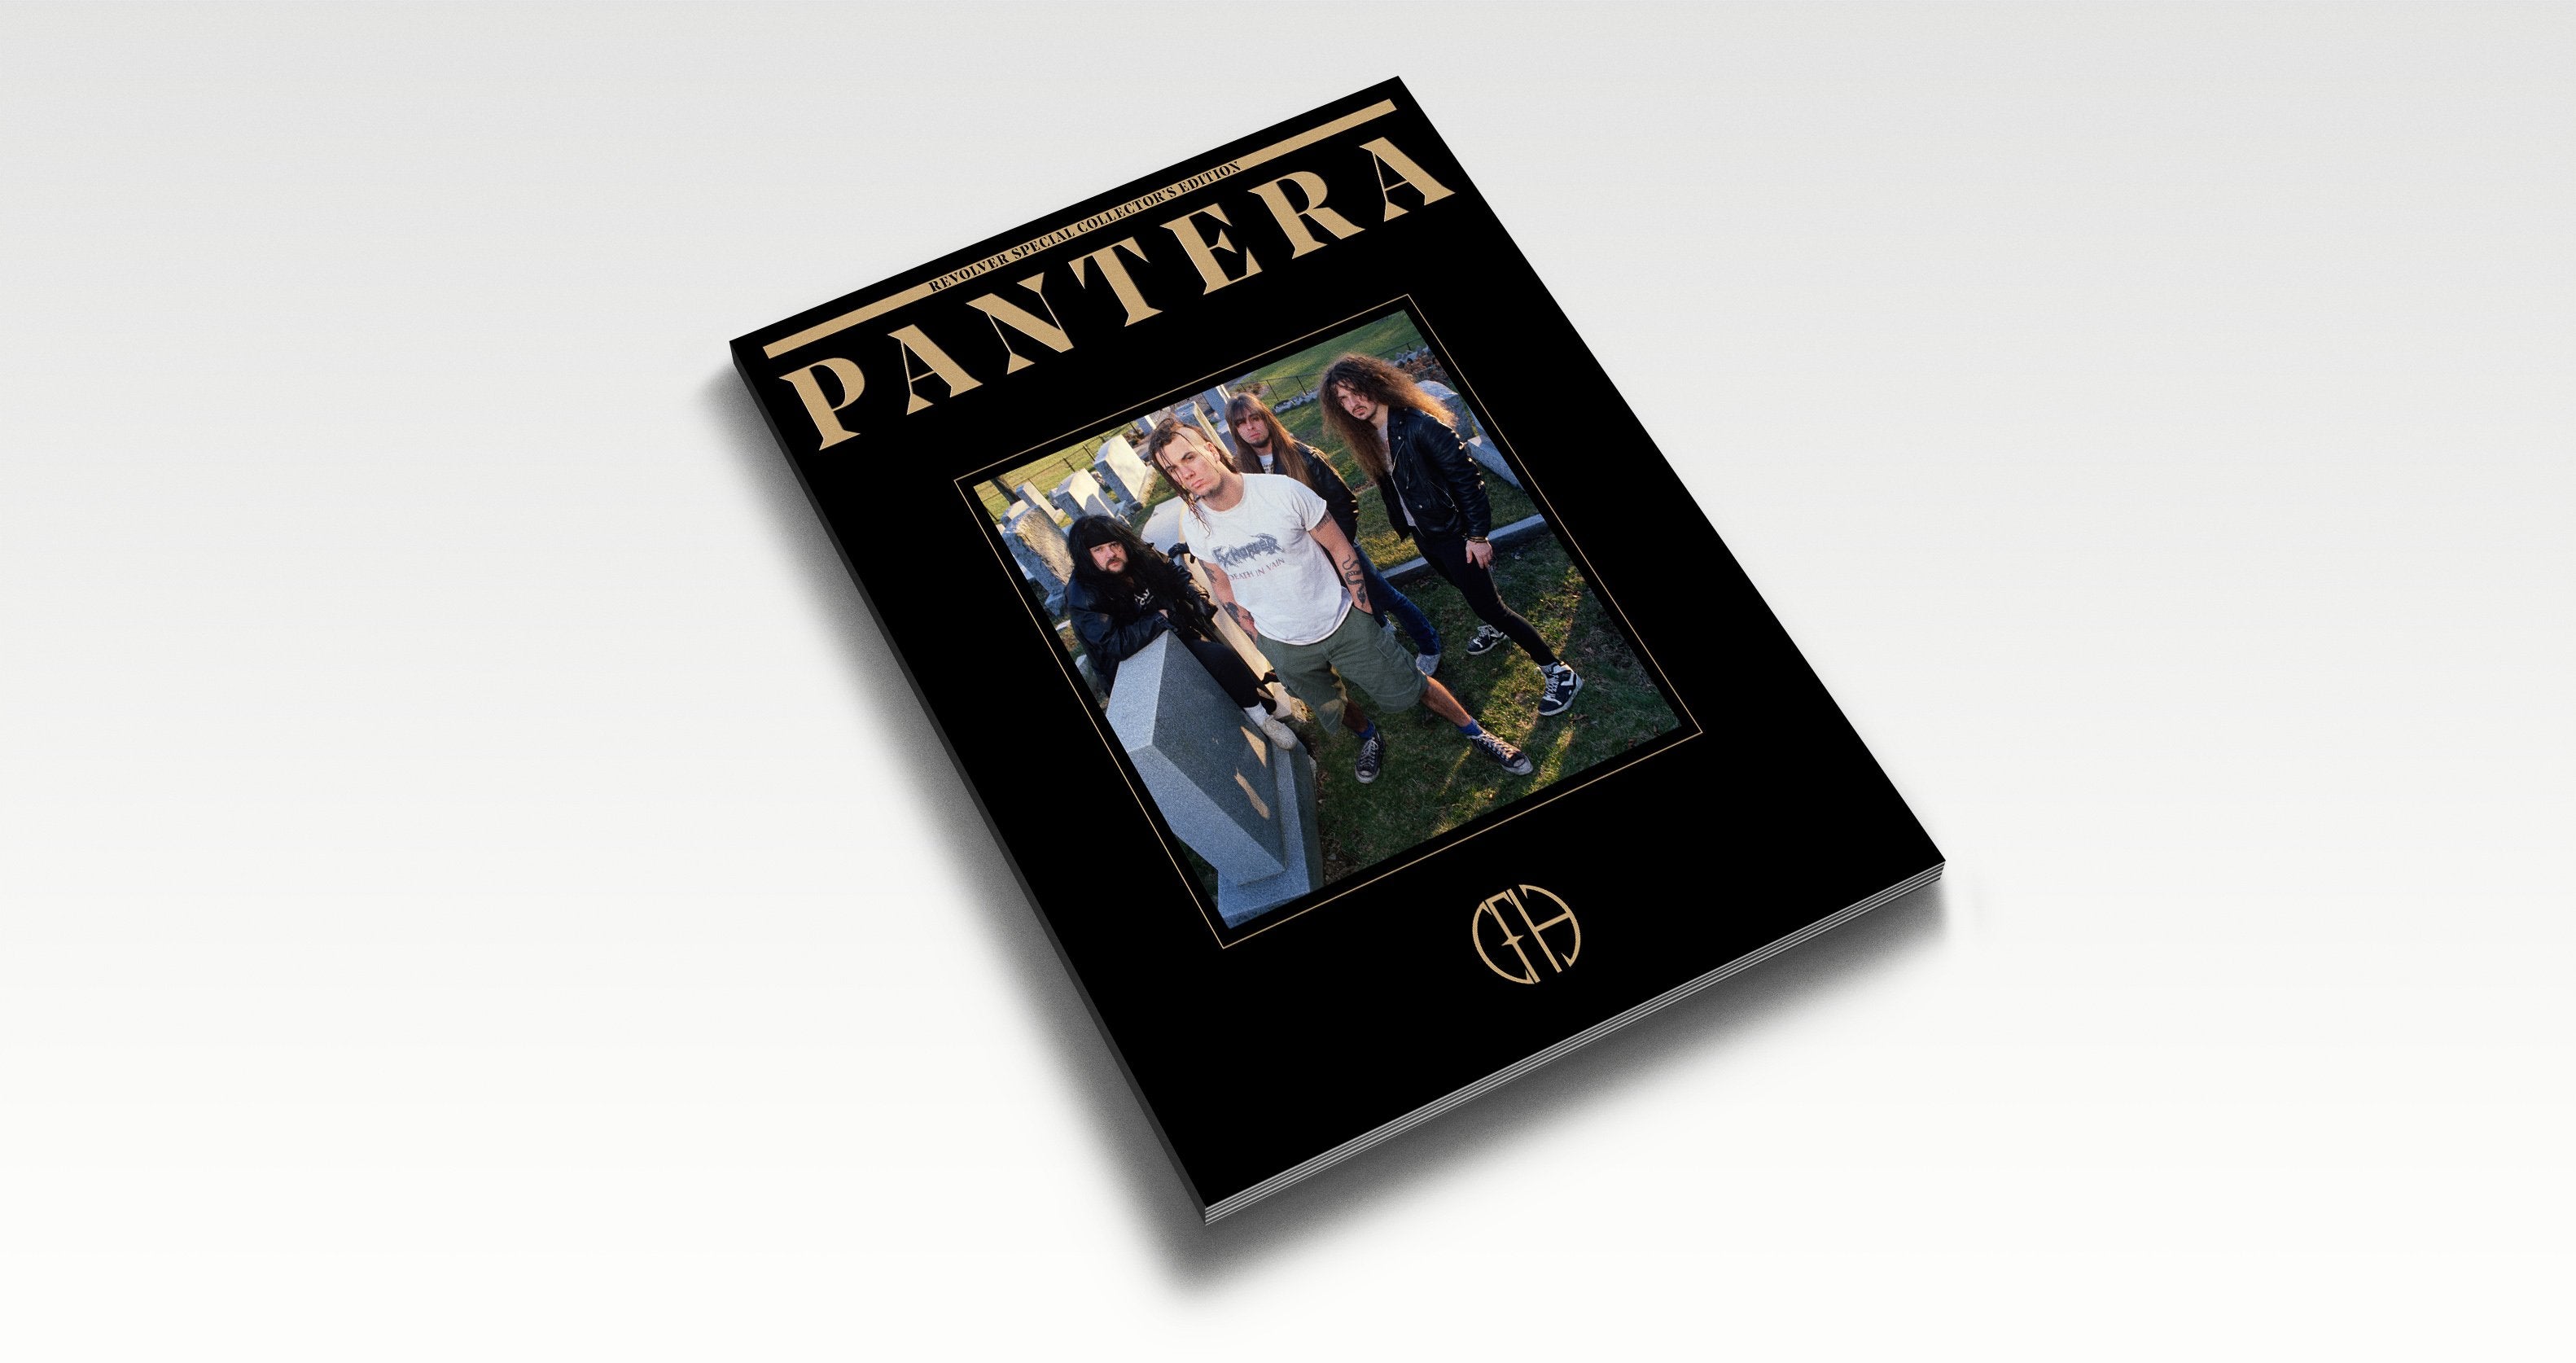 PANTERA: BOOK OF PANTERA SPECIAL COLLECTOR'S EDITION